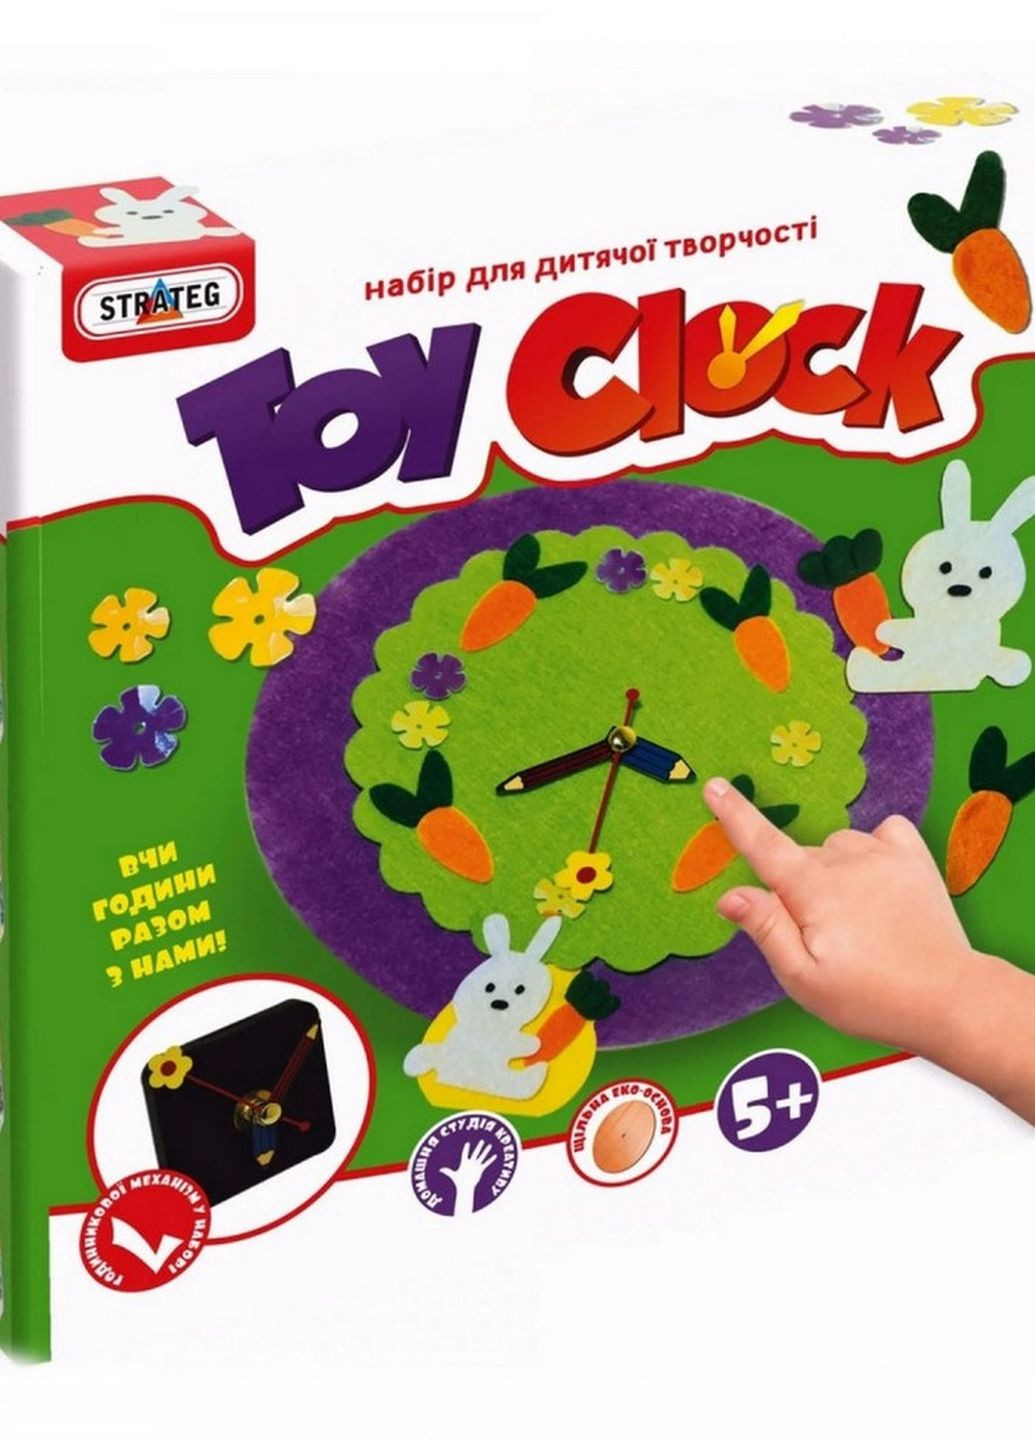 Набір для творчості "Toy clock - Заяча галявина" 15ST Strateg (277752825)